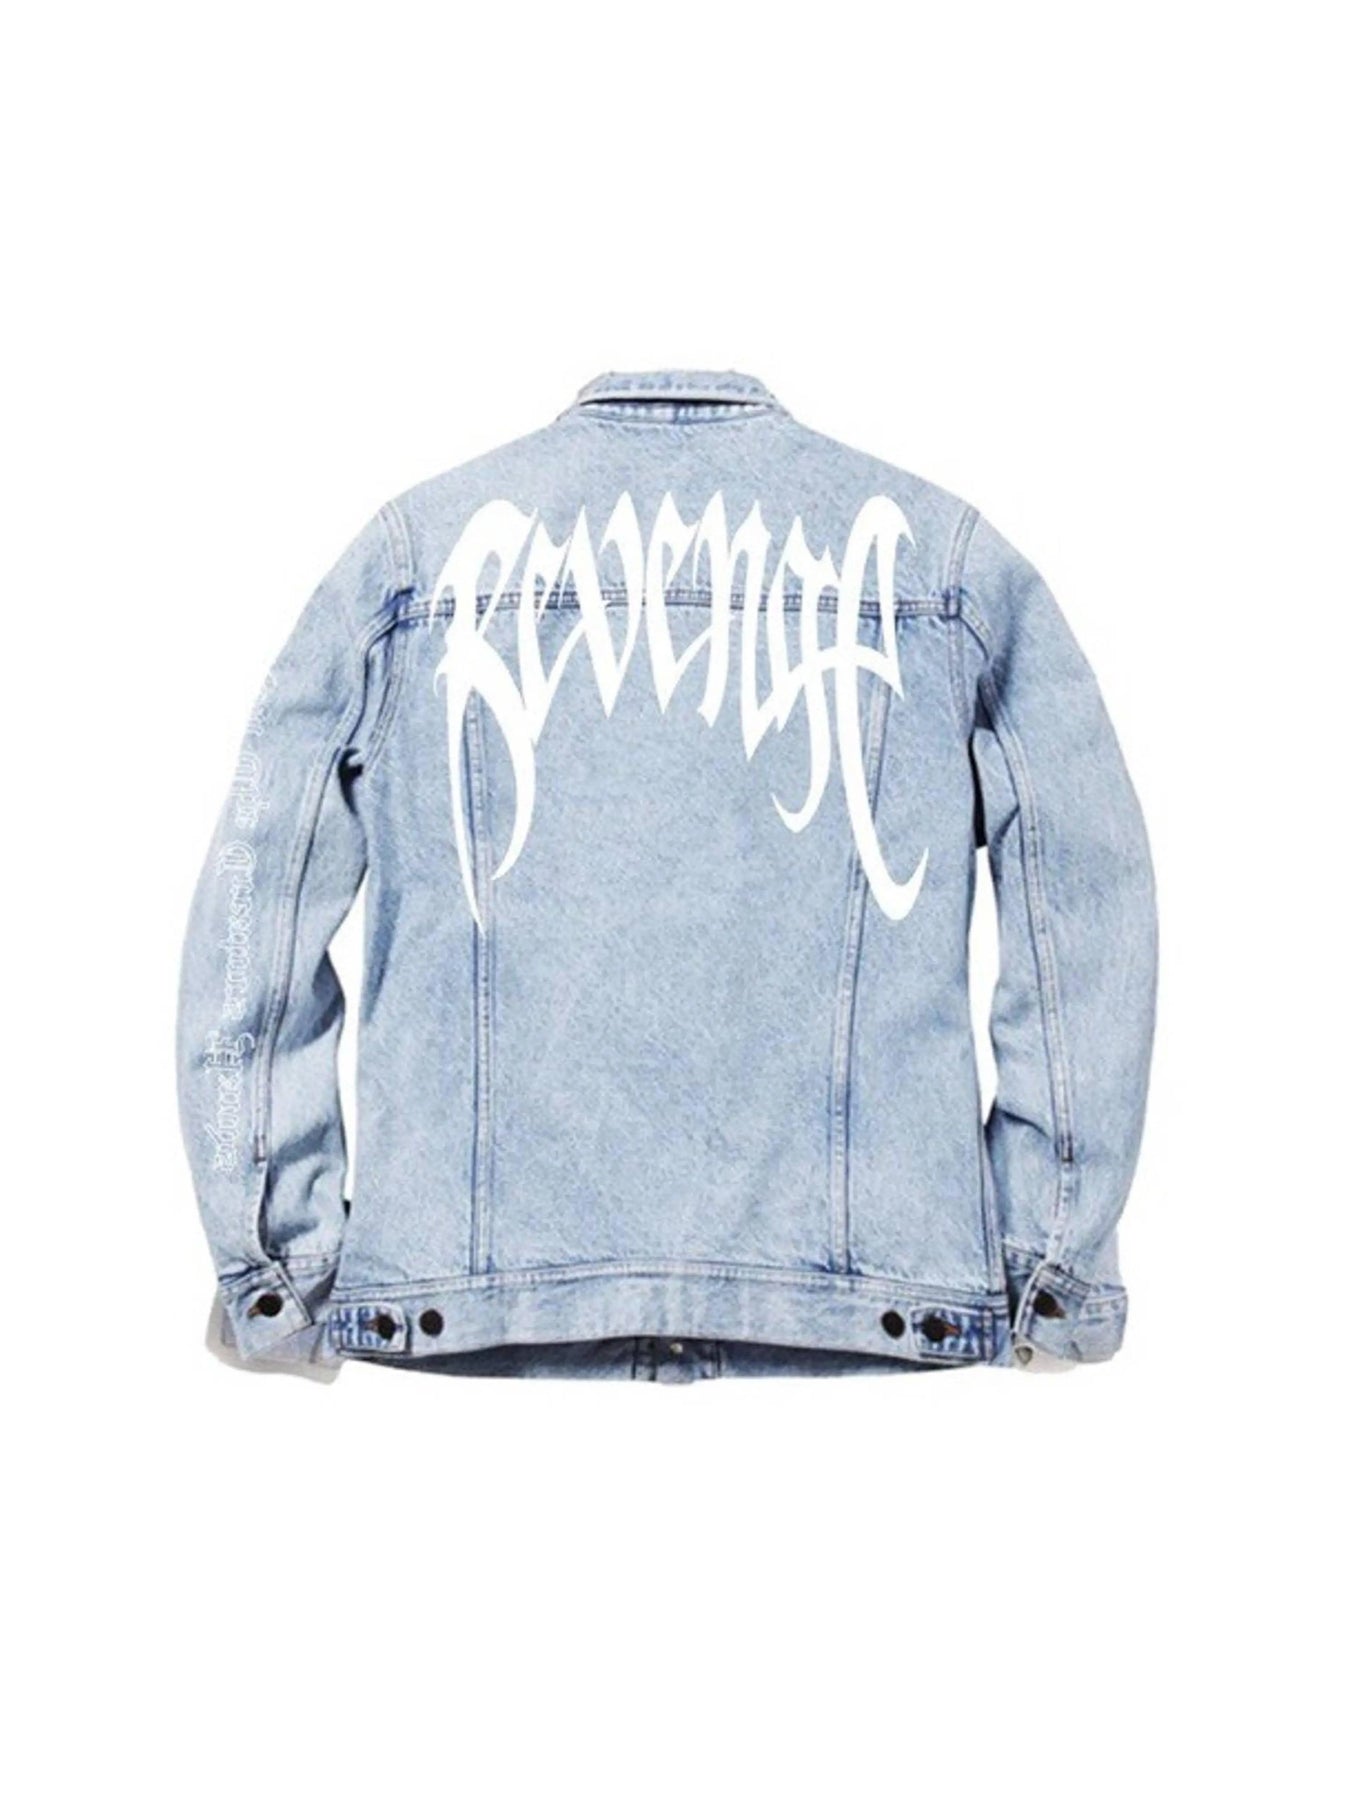 Revenge Denim Jacket Blue | Prior Store